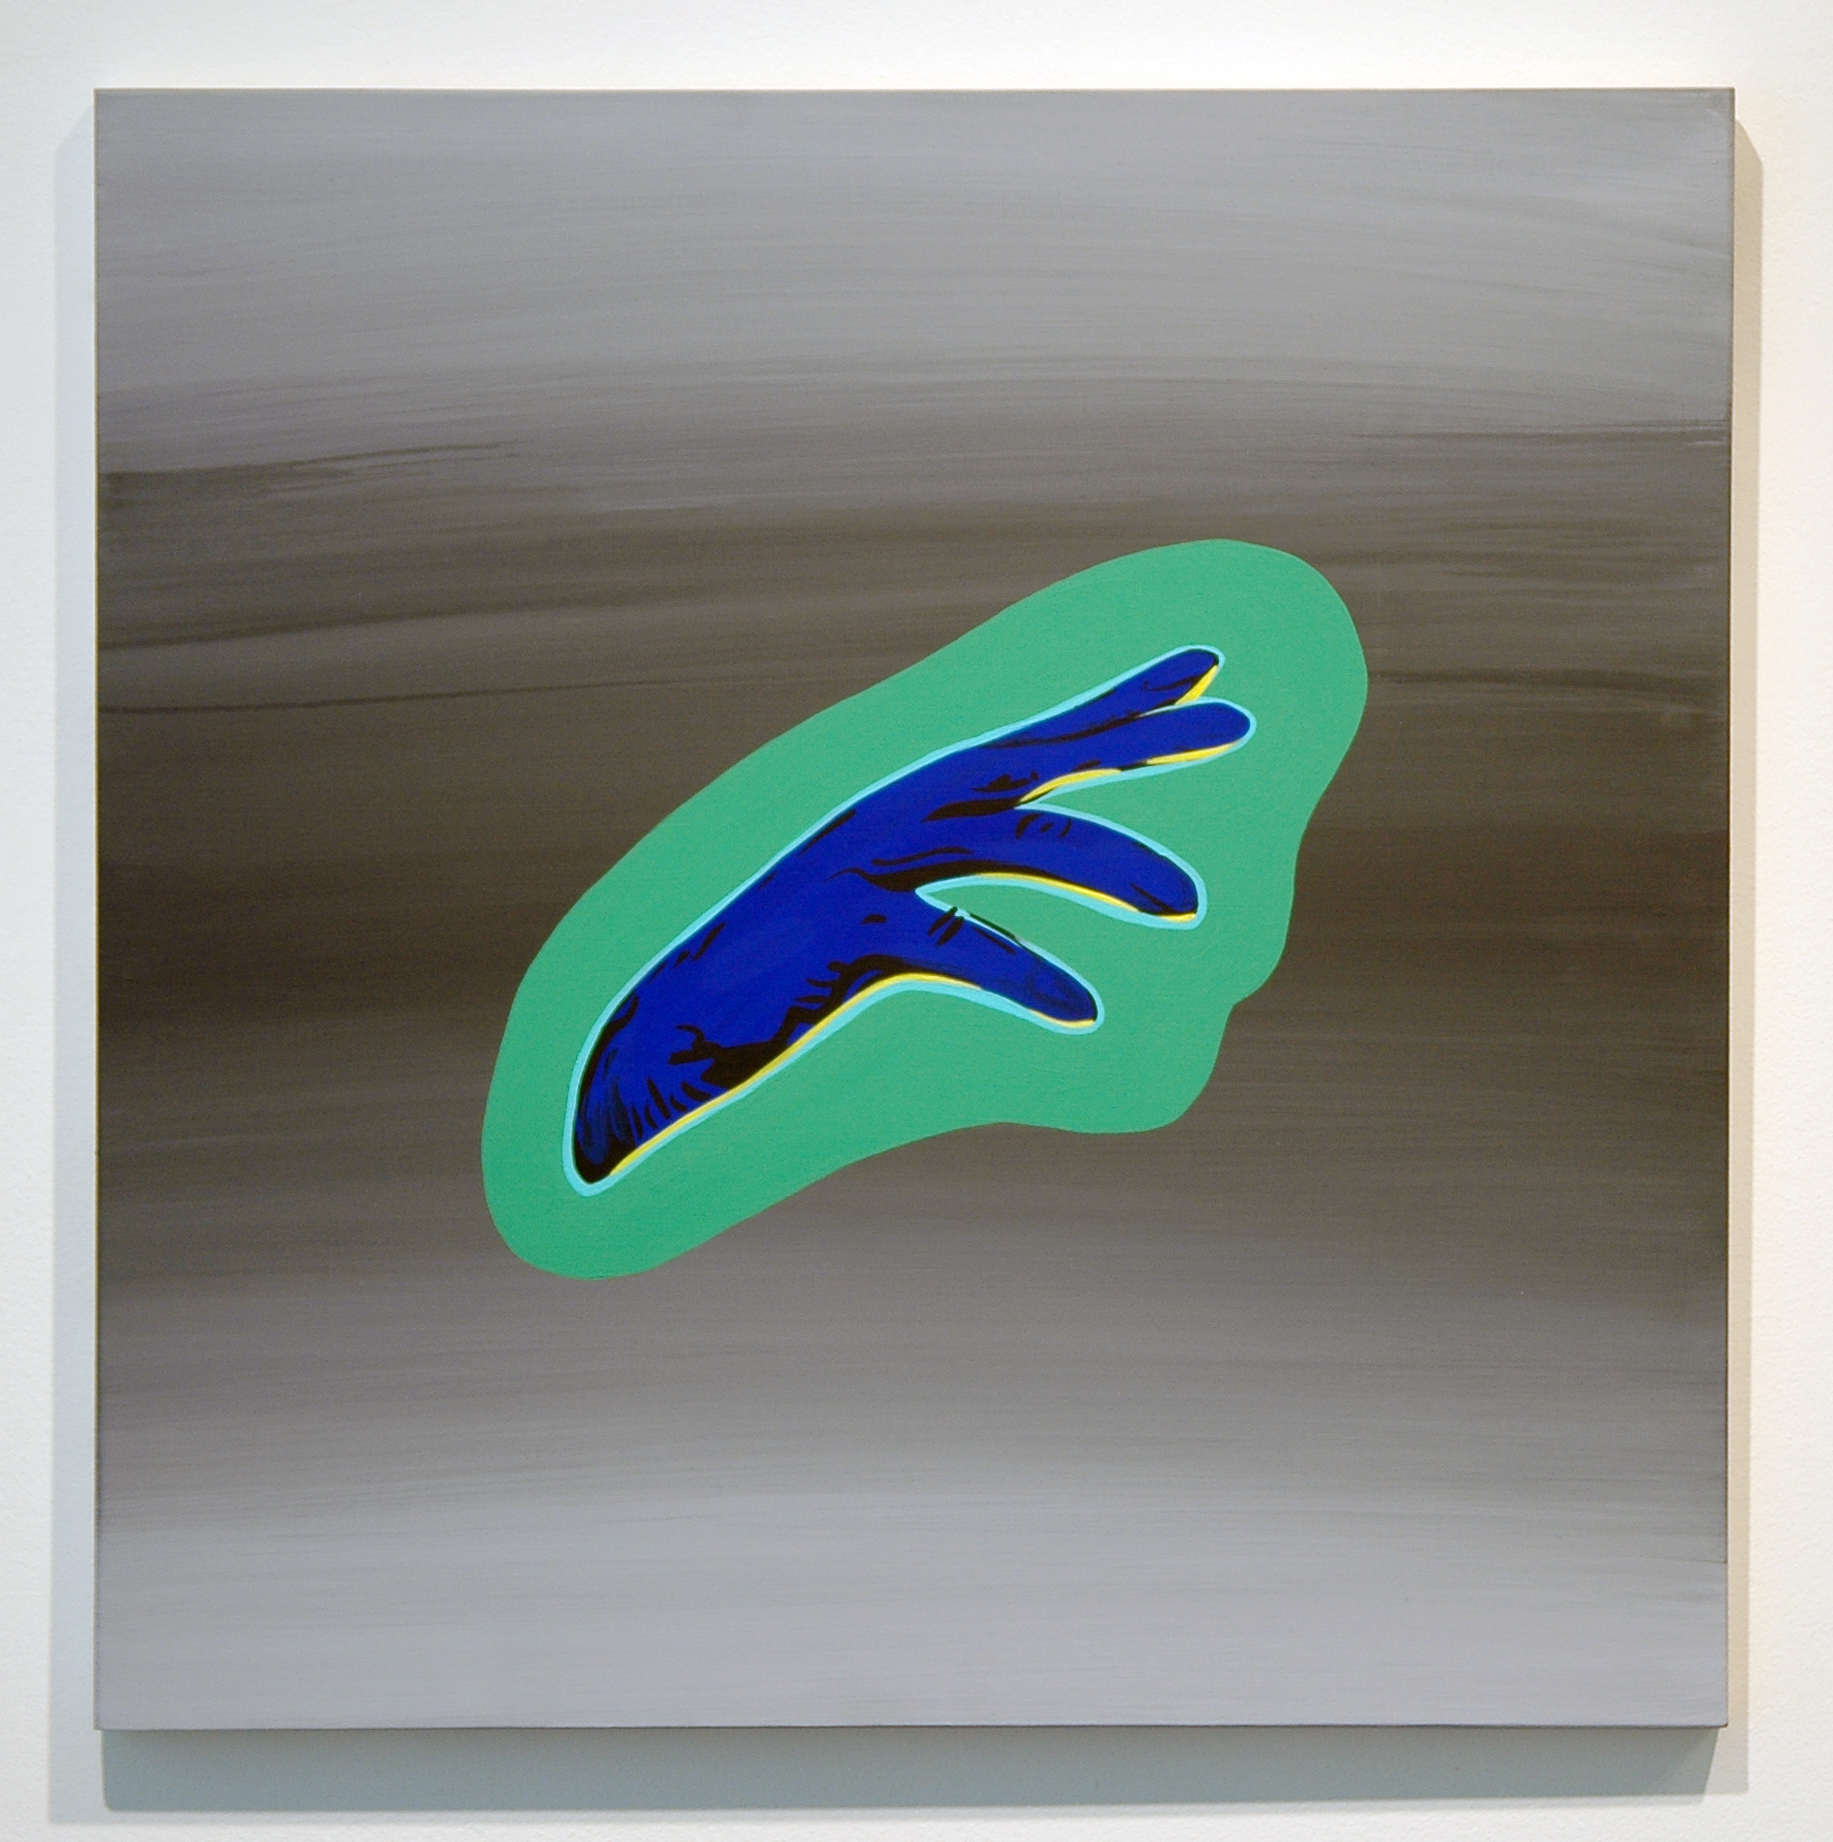   DERIC CARNER   The Light That Failed (Dutch Hand) , acrylic on panel, 20" x 20", 2012 